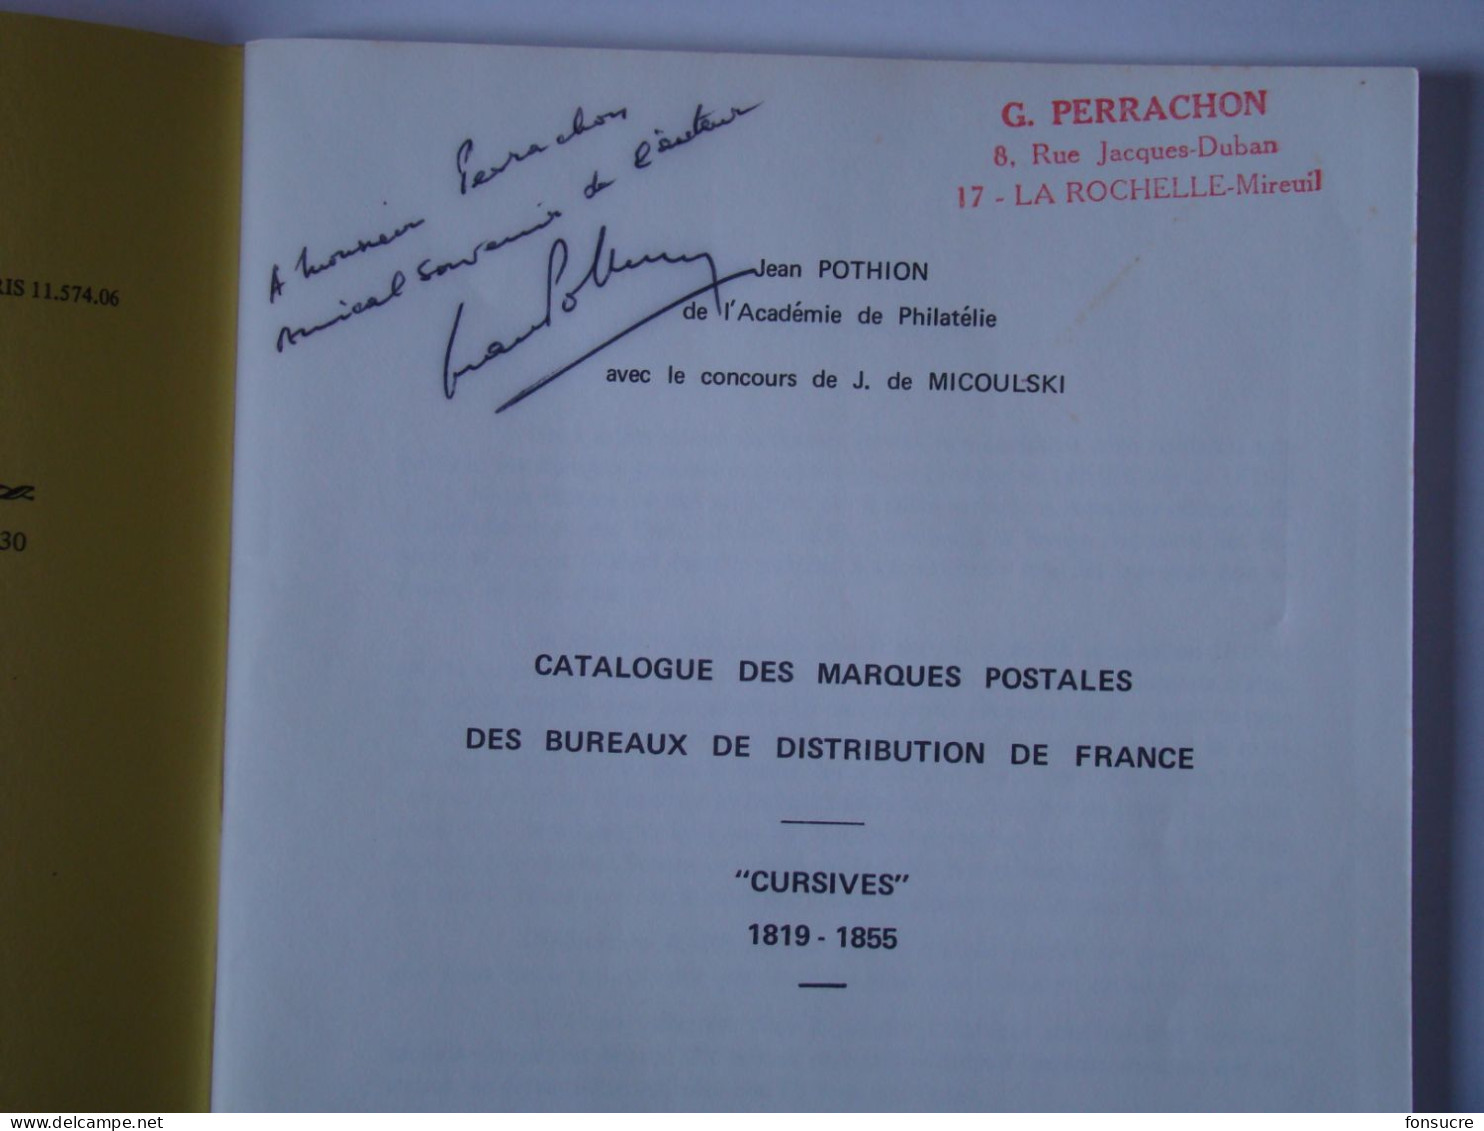 Catalogue Dédicacé Marques Postales Des Bureaux De Distribution De France Cursives 1819-55  J. POTHION  42 Pages 1968 - Francia